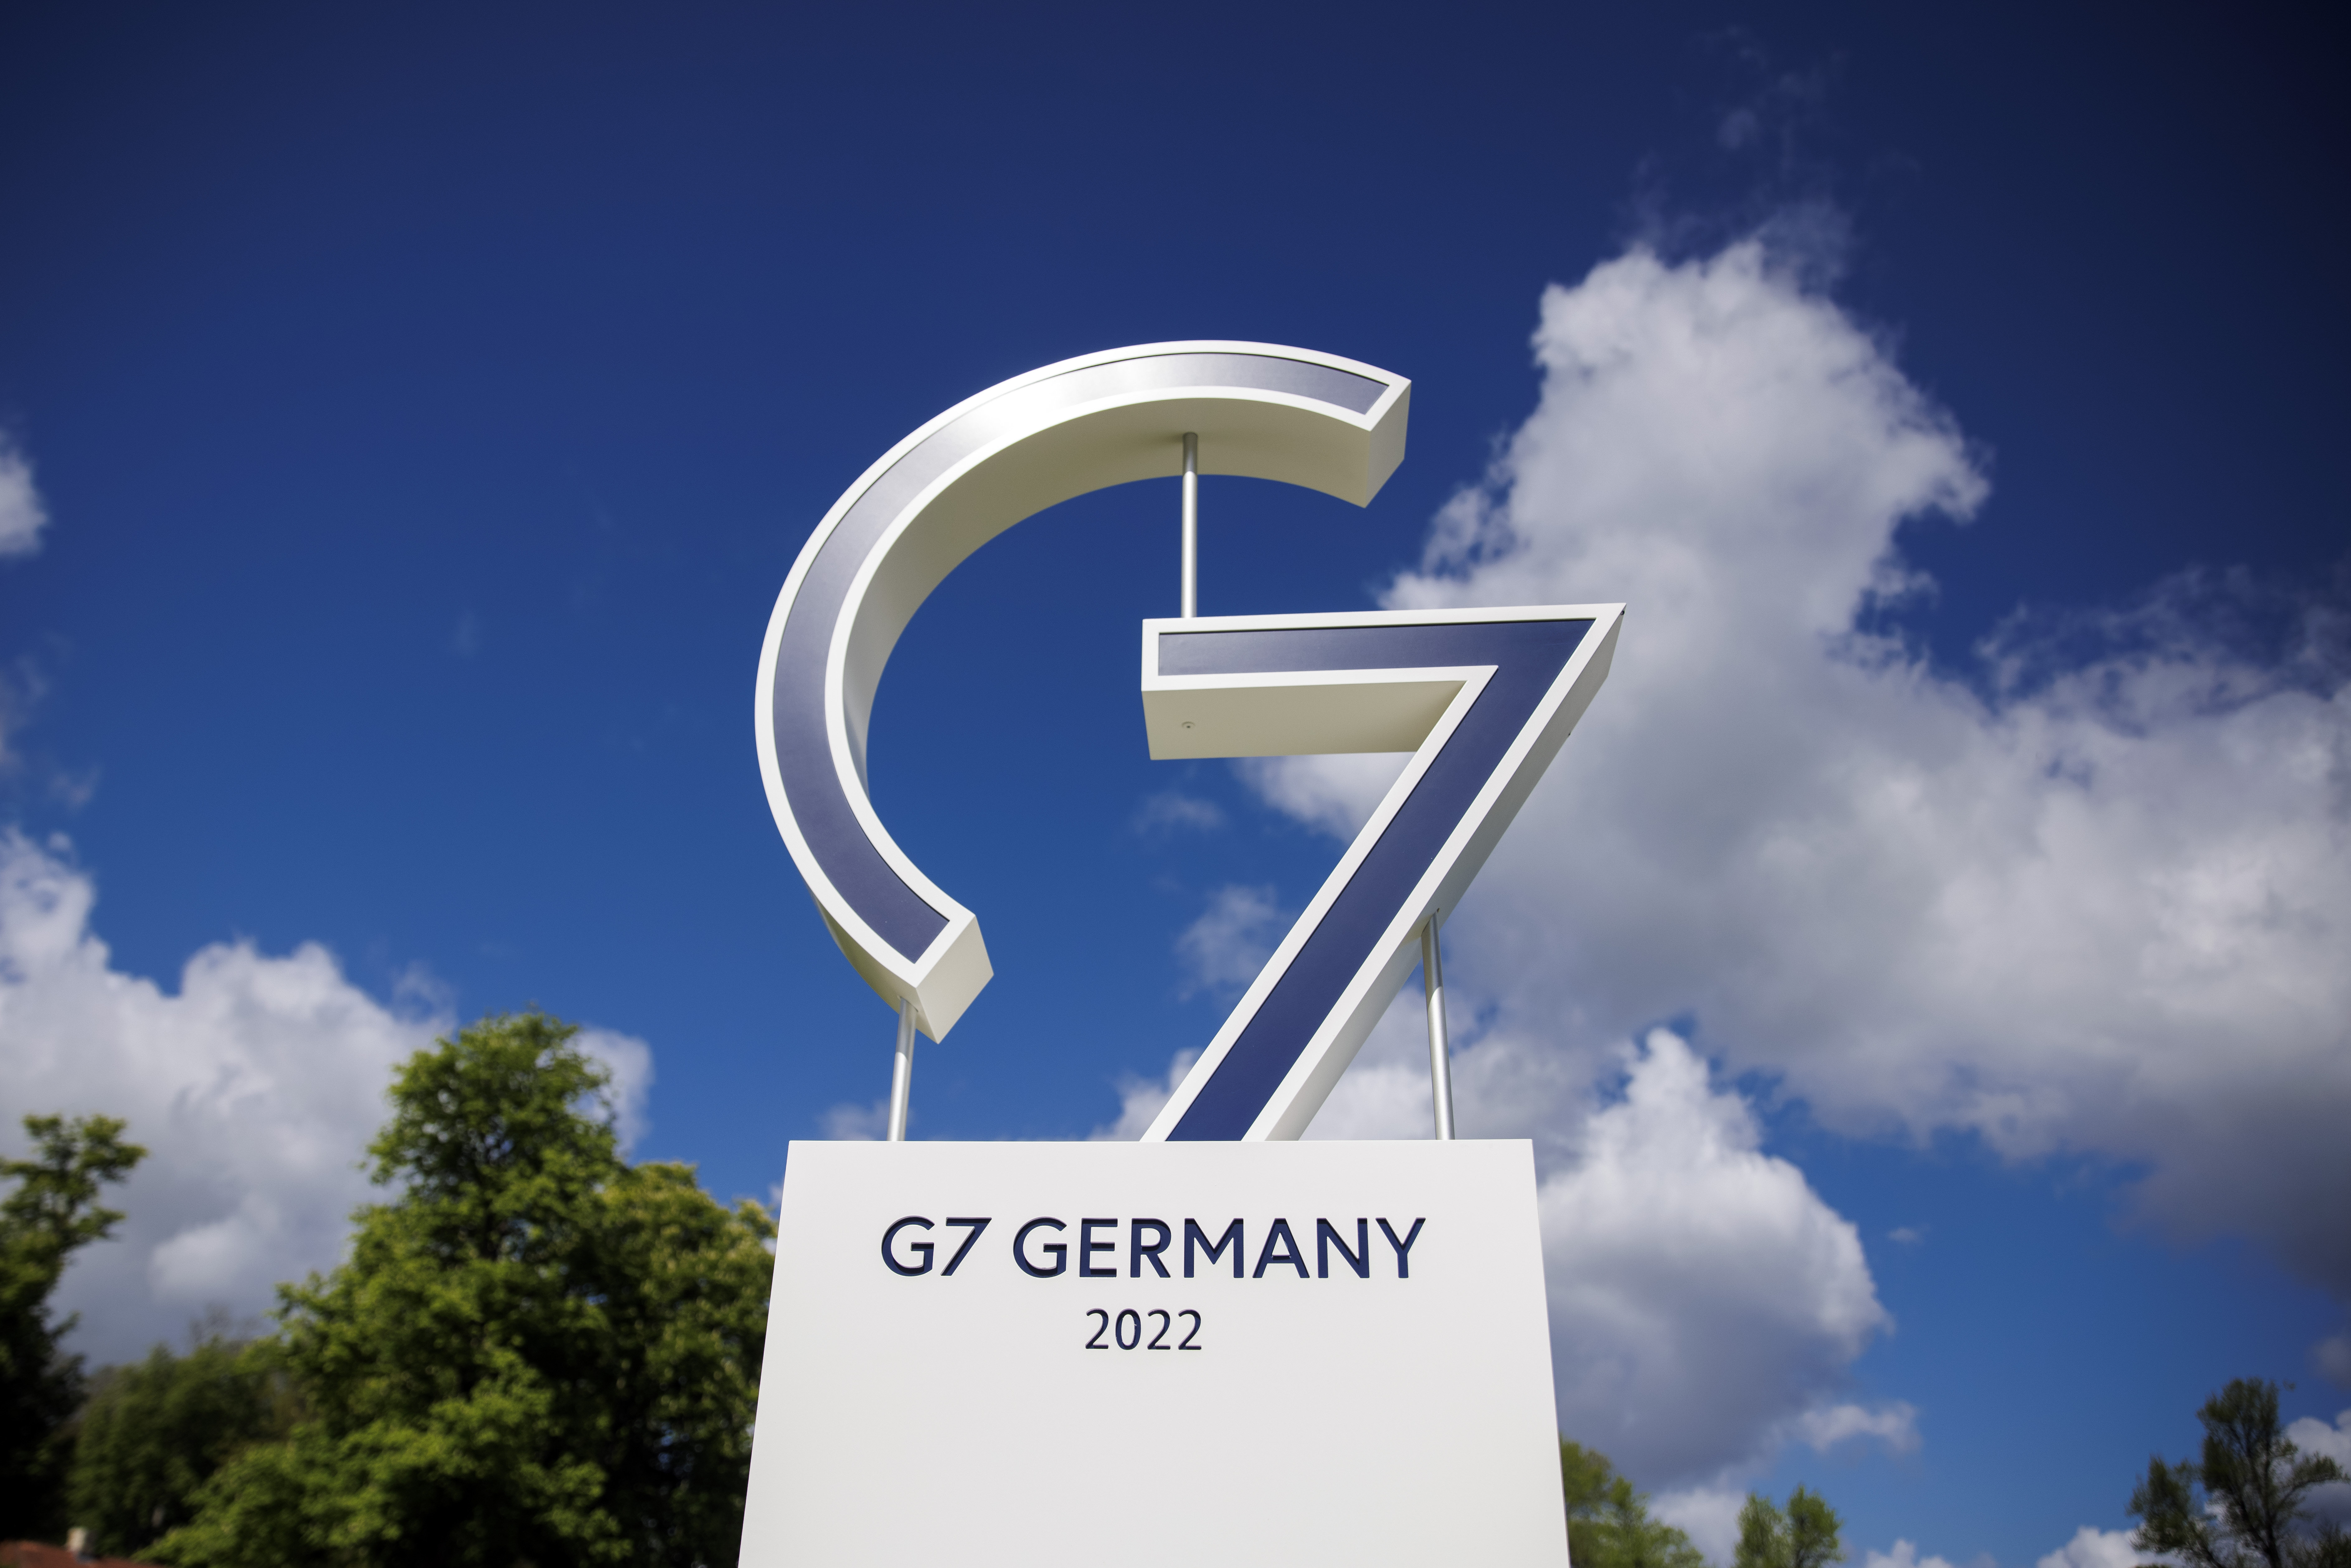 G7 Thành viên: G7 là một trong những tổ chức quan trọng nhất trên thế giới, gồm 7 quốc gia công nghiệp phát triển. Tại các cuộc họp G7, số liệu thống kê rất quan trọng để đánh giá tình hình kinh tế và chính trị của các thành viên trong tổ chức. Hãy xem các hình ảnh liên quan để hiểu thêm về sự quan trọng của G7 trong thế giới hiện đại.